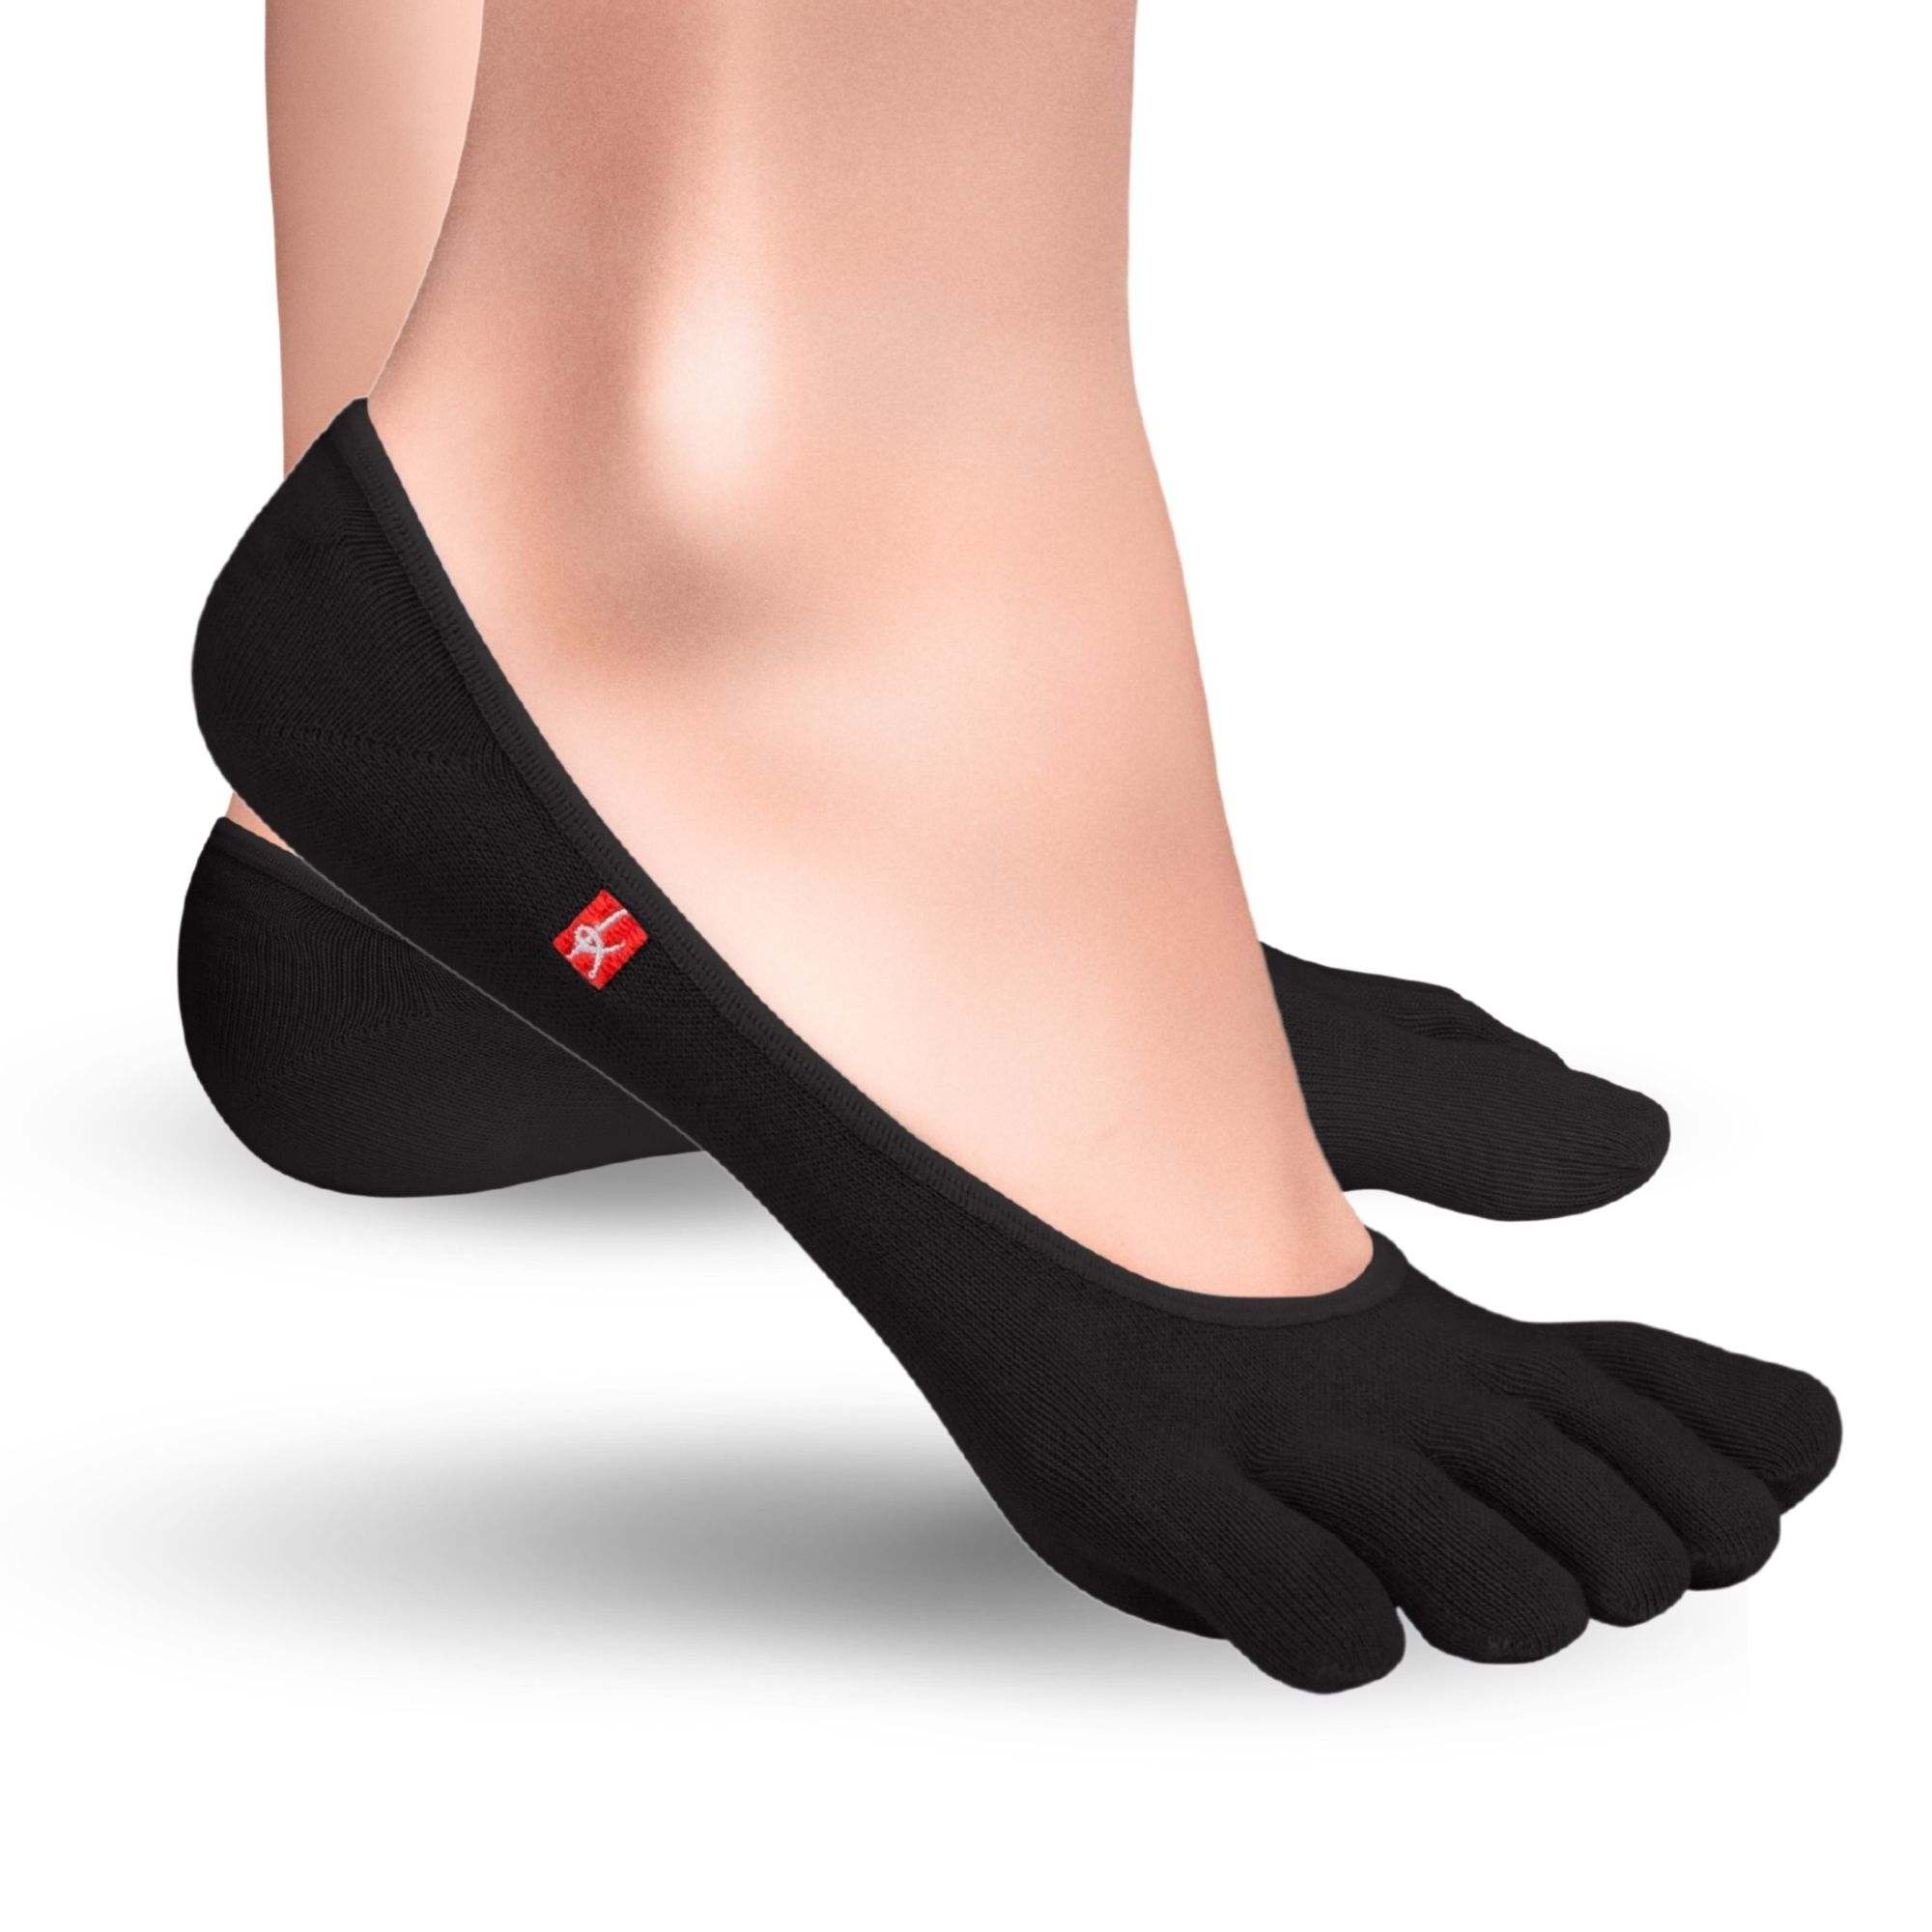 Knitido Zero Coolmax toe socks ladies toe socks in black